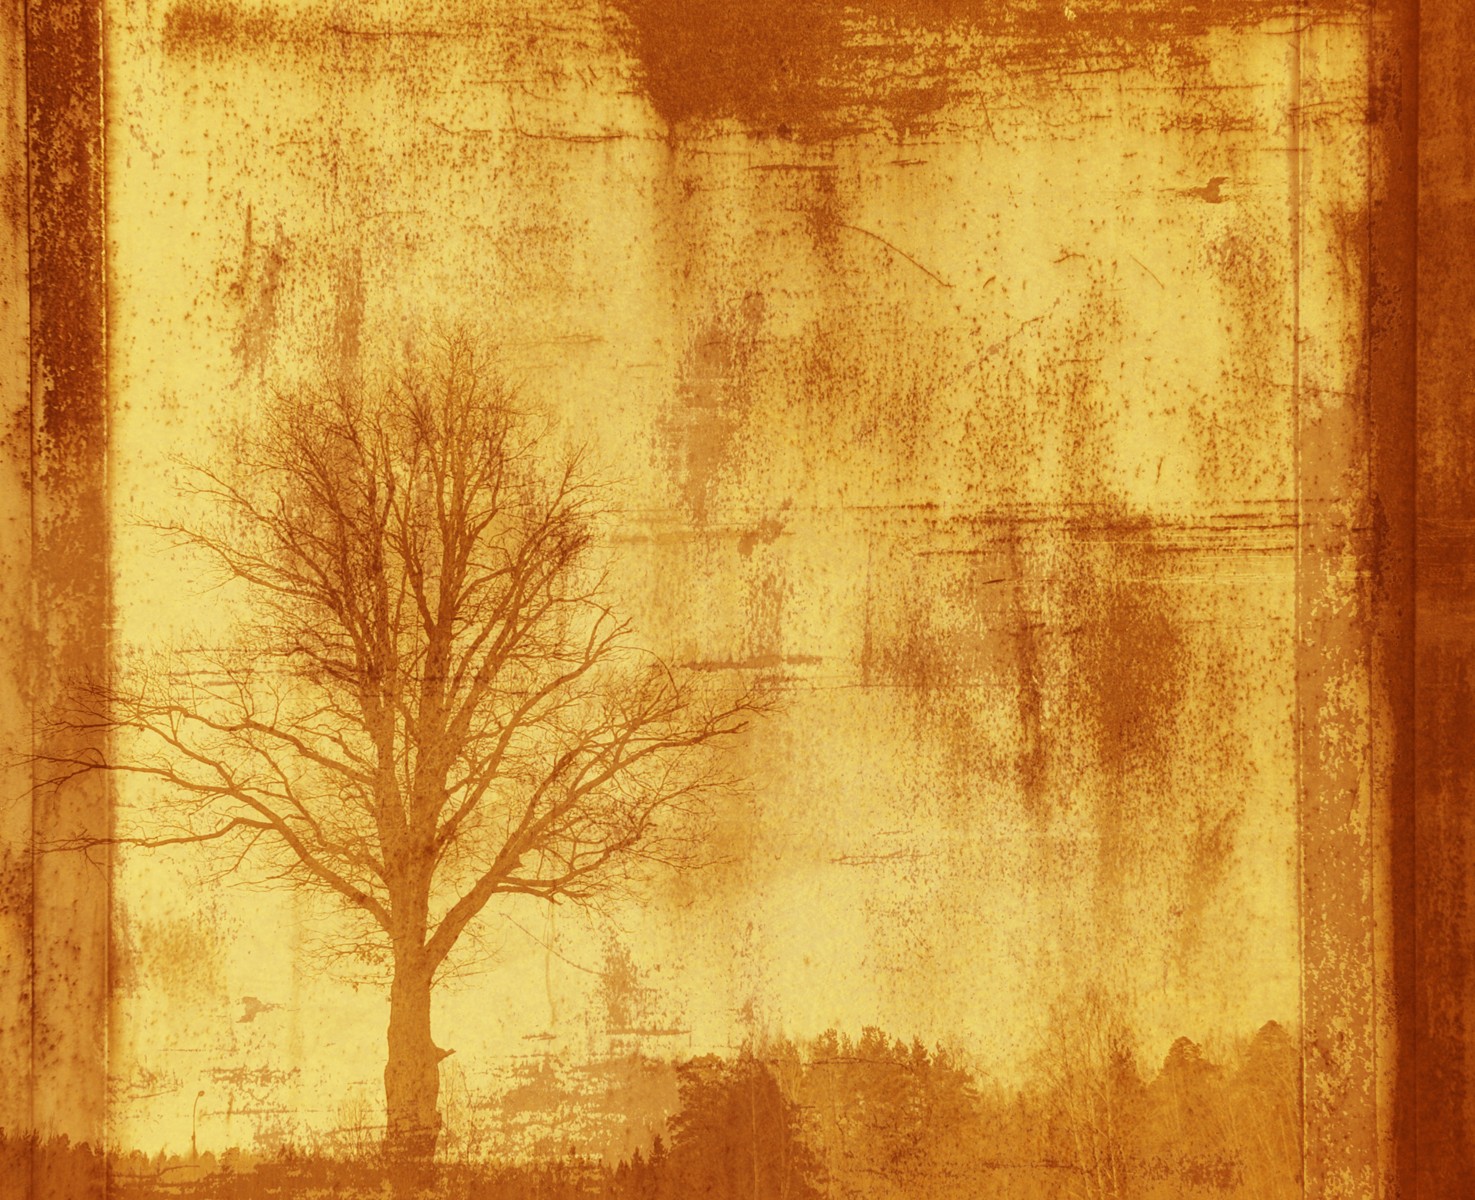 Ρόλερ Ολικής Συσκότισης/Blackout AB0022 Σχέδιο Abstract-Δέντρο το χειμώνα